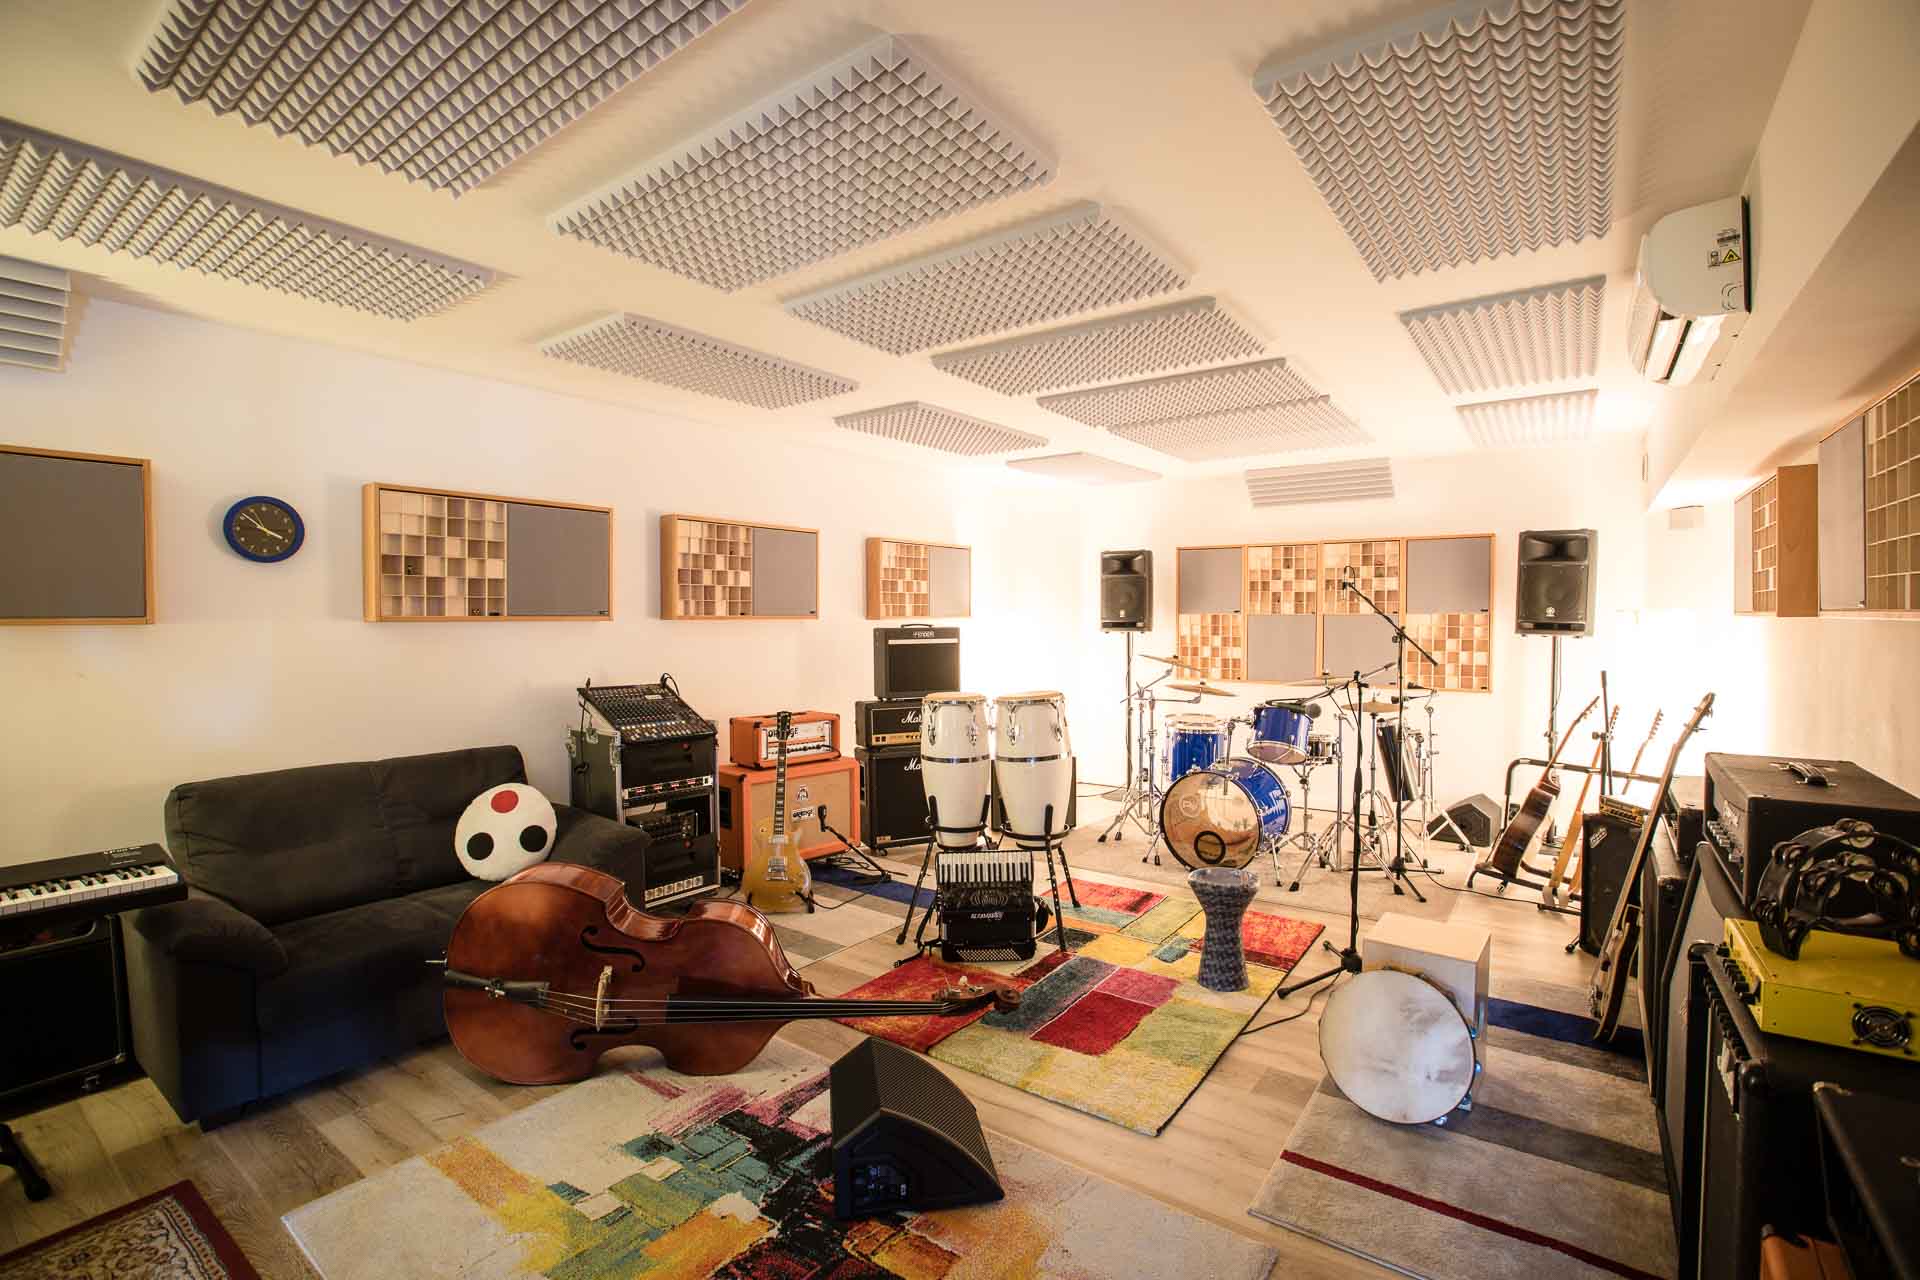 STUDIO XLR: sala prove, studio di registrazione e produzioni musicali SAN DONATO MILANESE